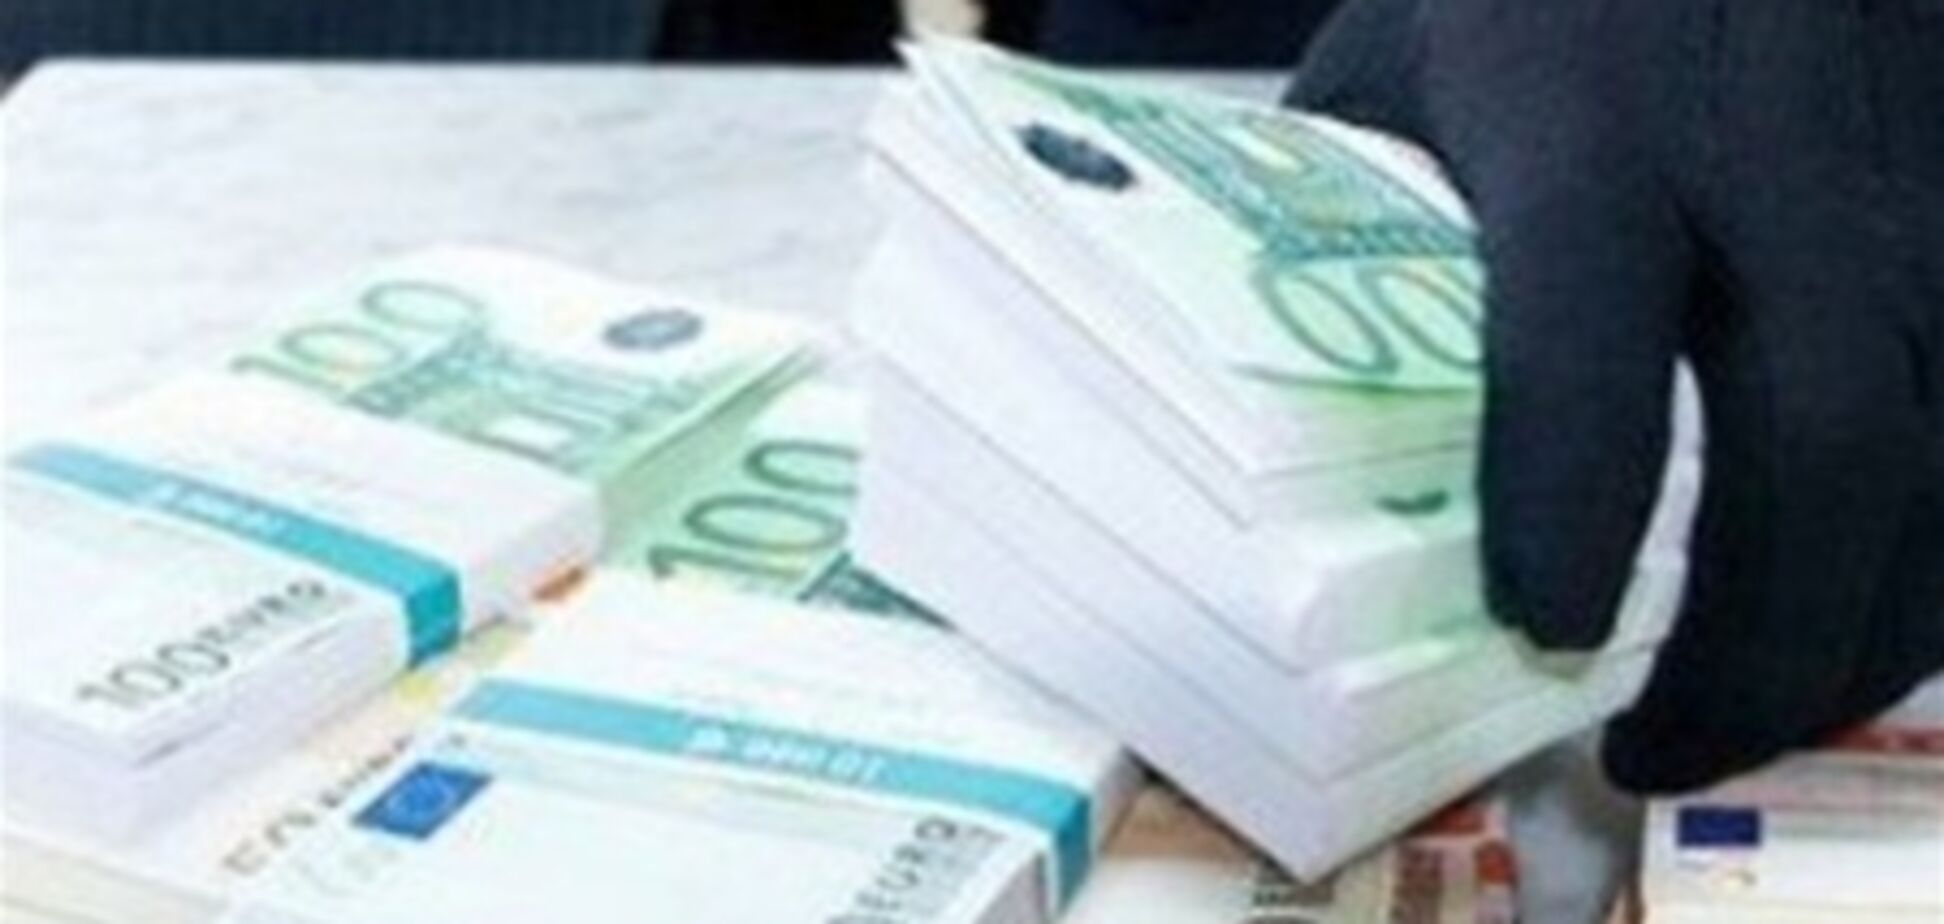 Двое грабителей вынесли из греческого банка €1 млн 